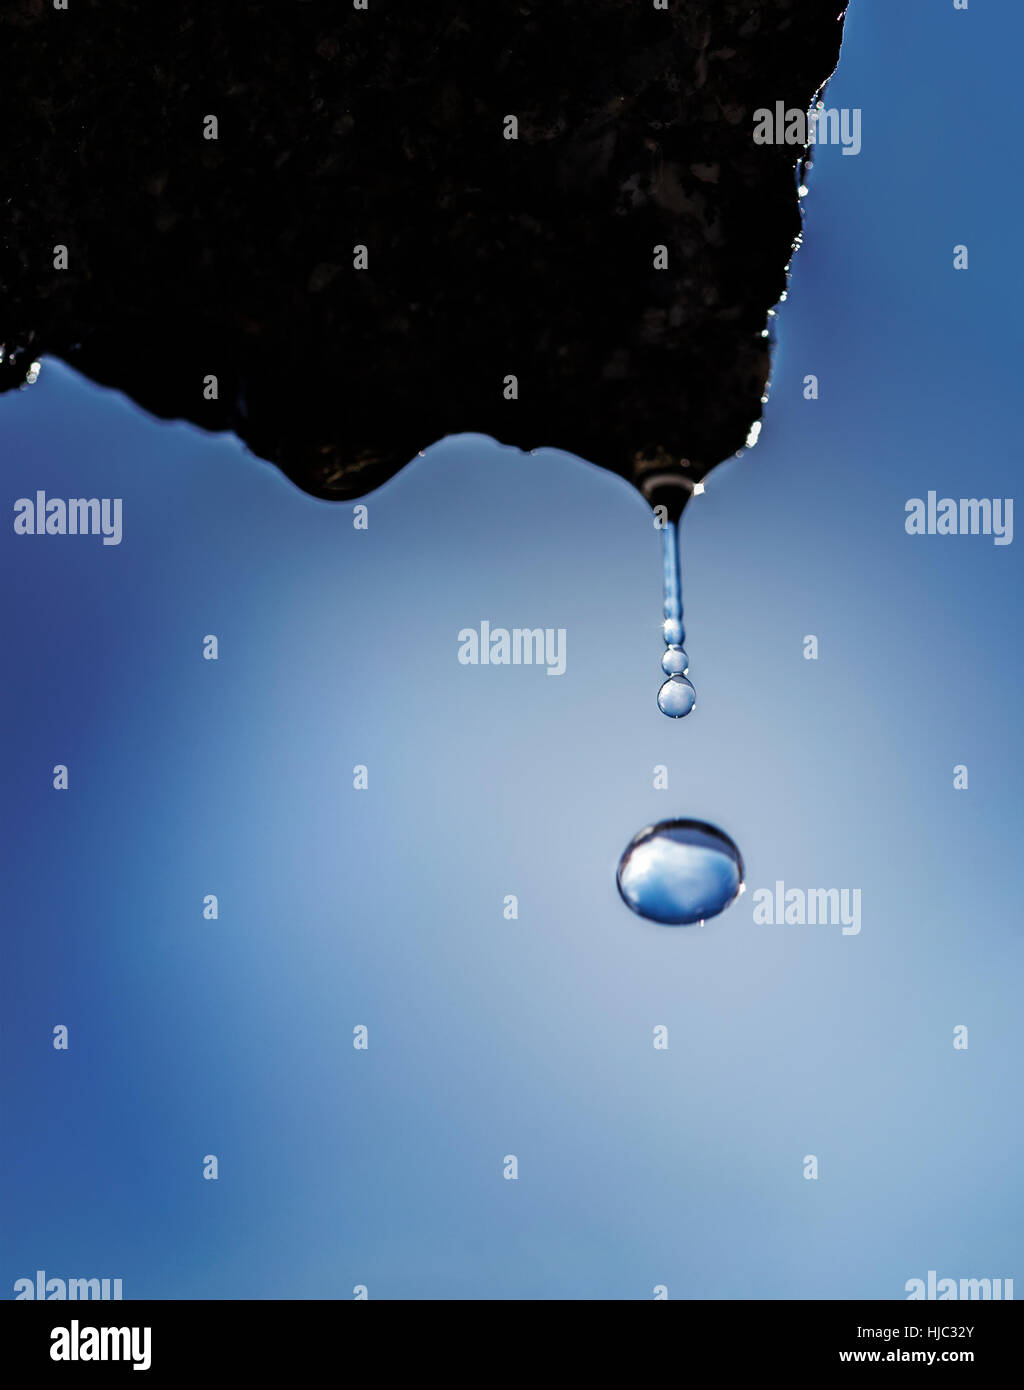 https://c8.alamy.com/comp/HJC32Y/falling-water-drop-frozen-in-time-HJC32Y.jpg